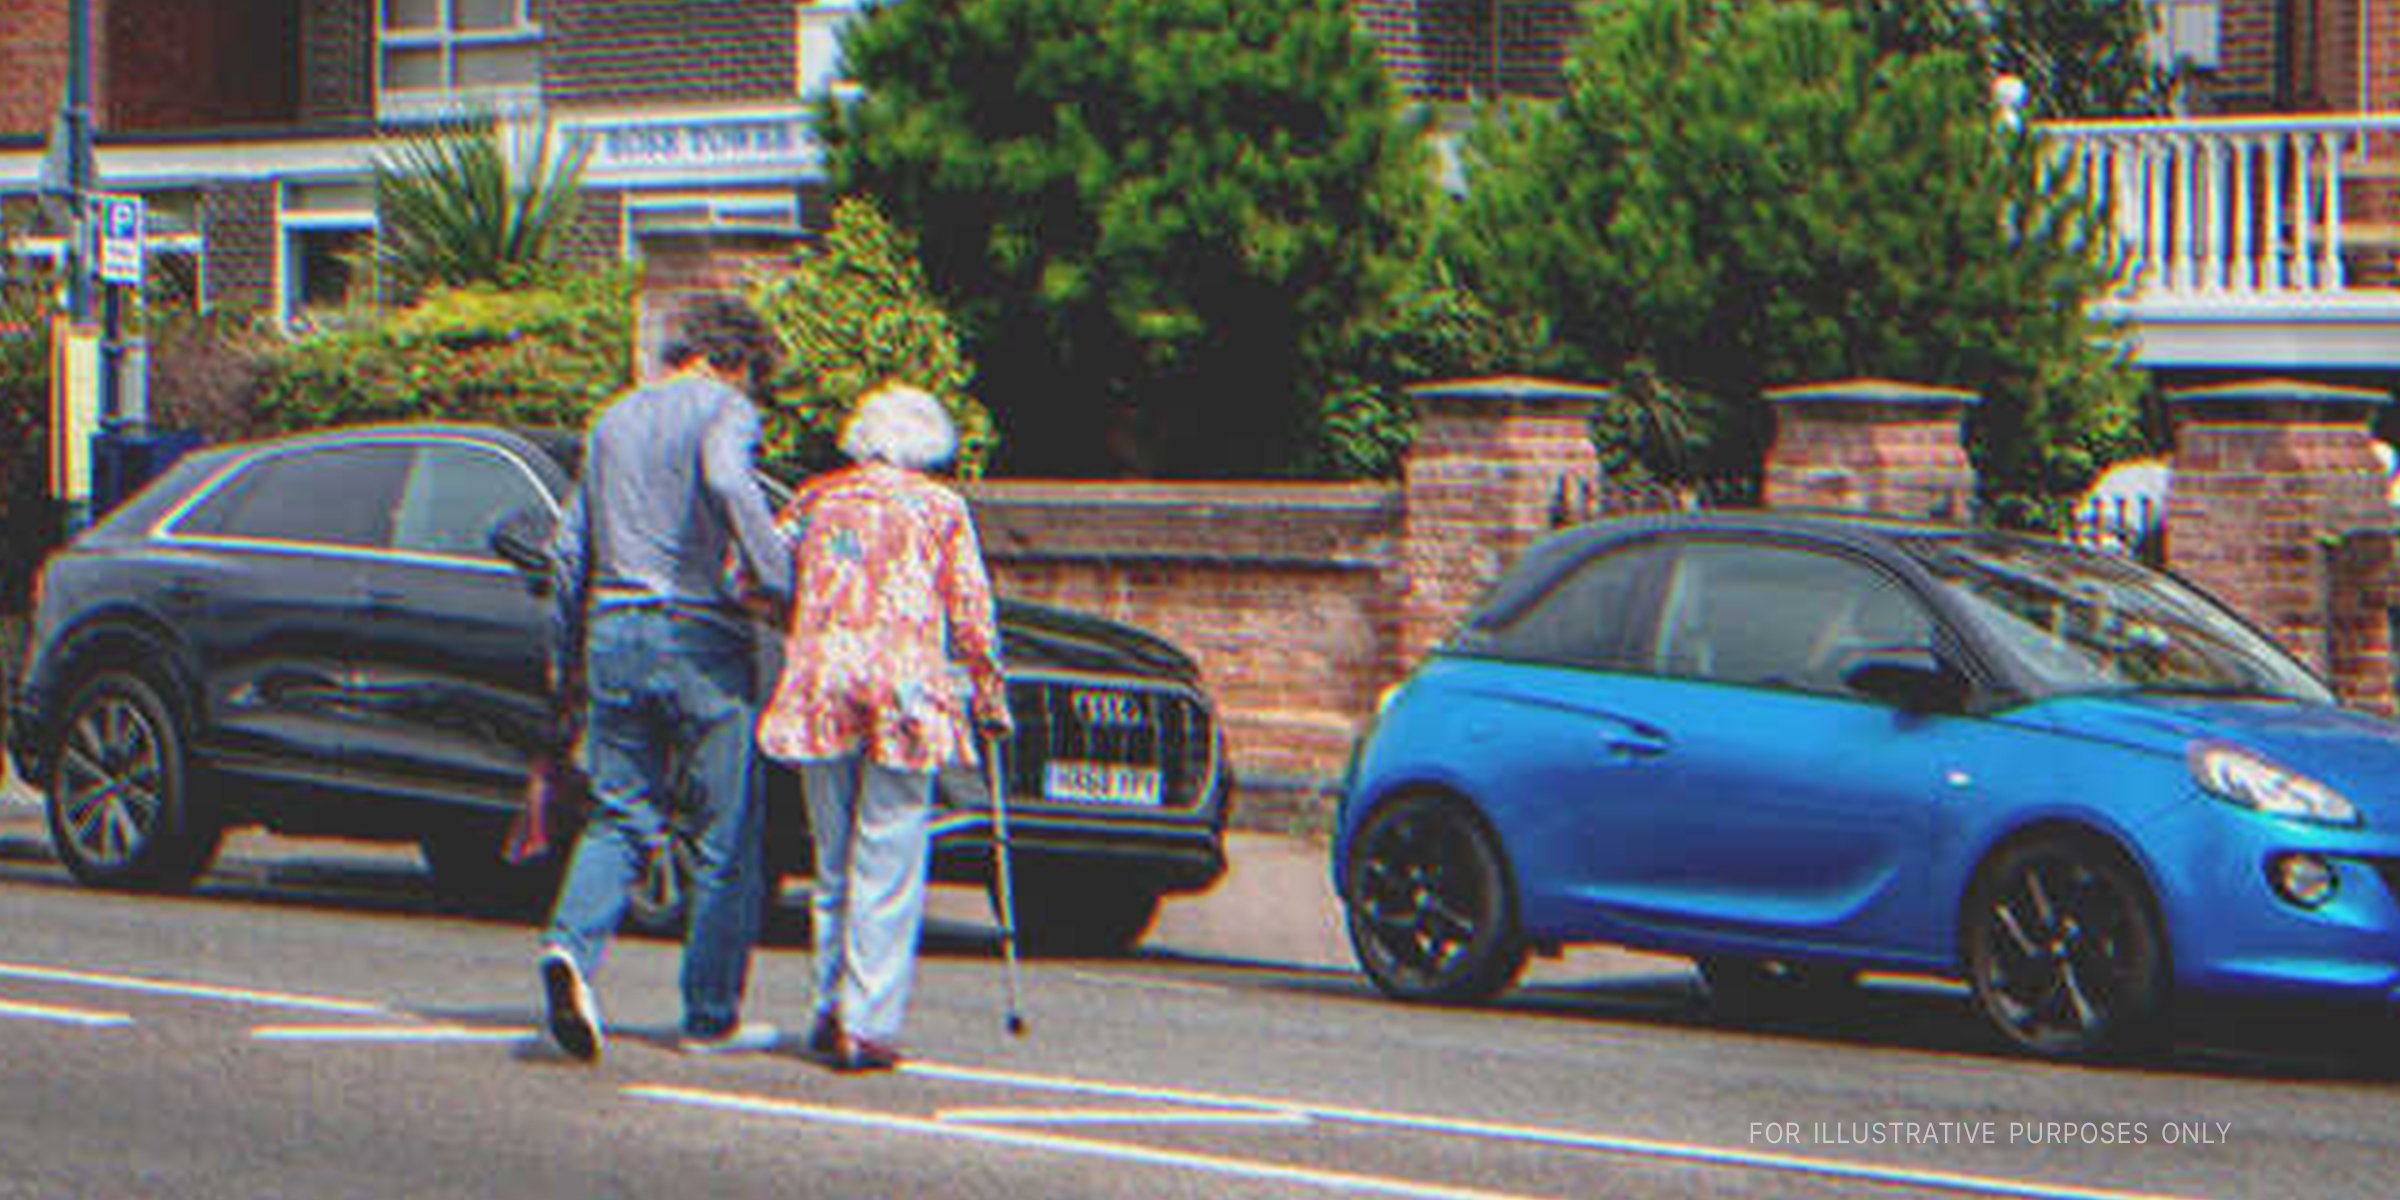 Man helps elderly woman cross the road | Source: Shutterstock